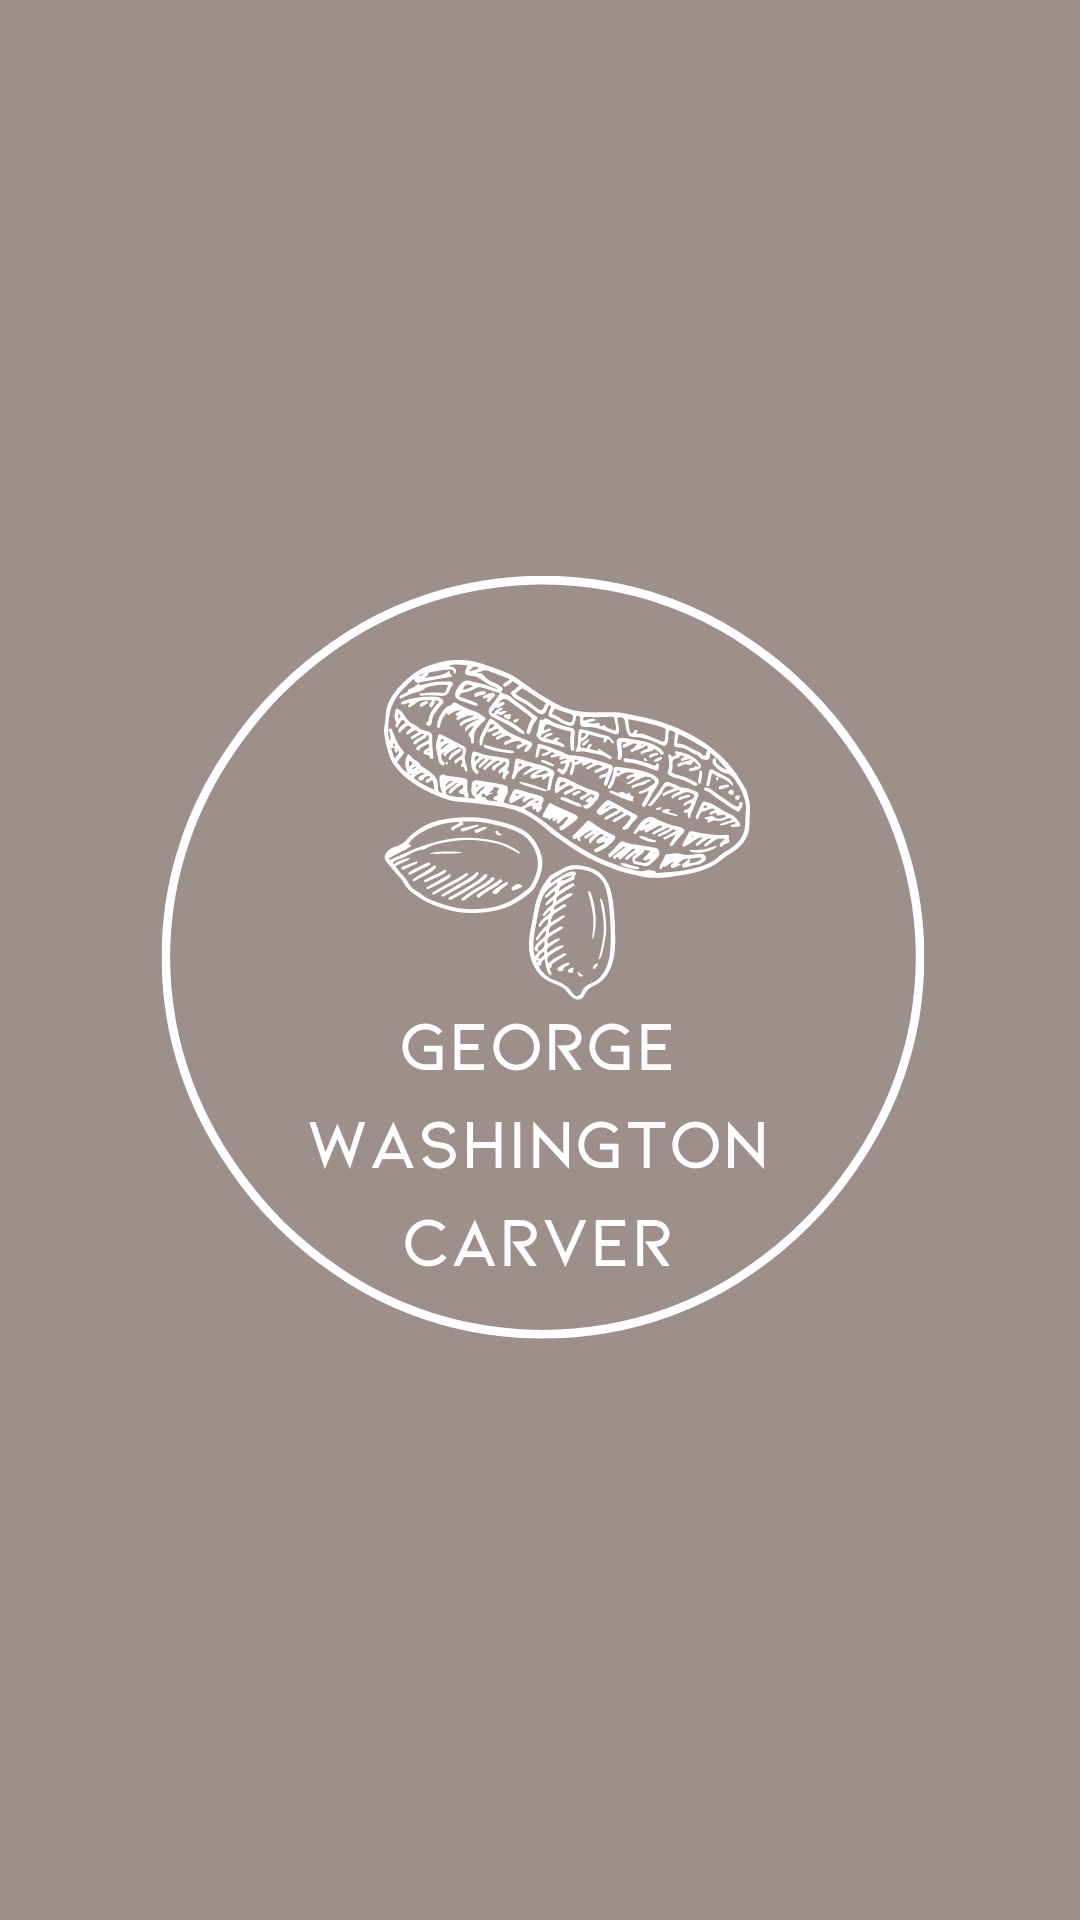 George Washington Carver Letter - Agricultural Scientist